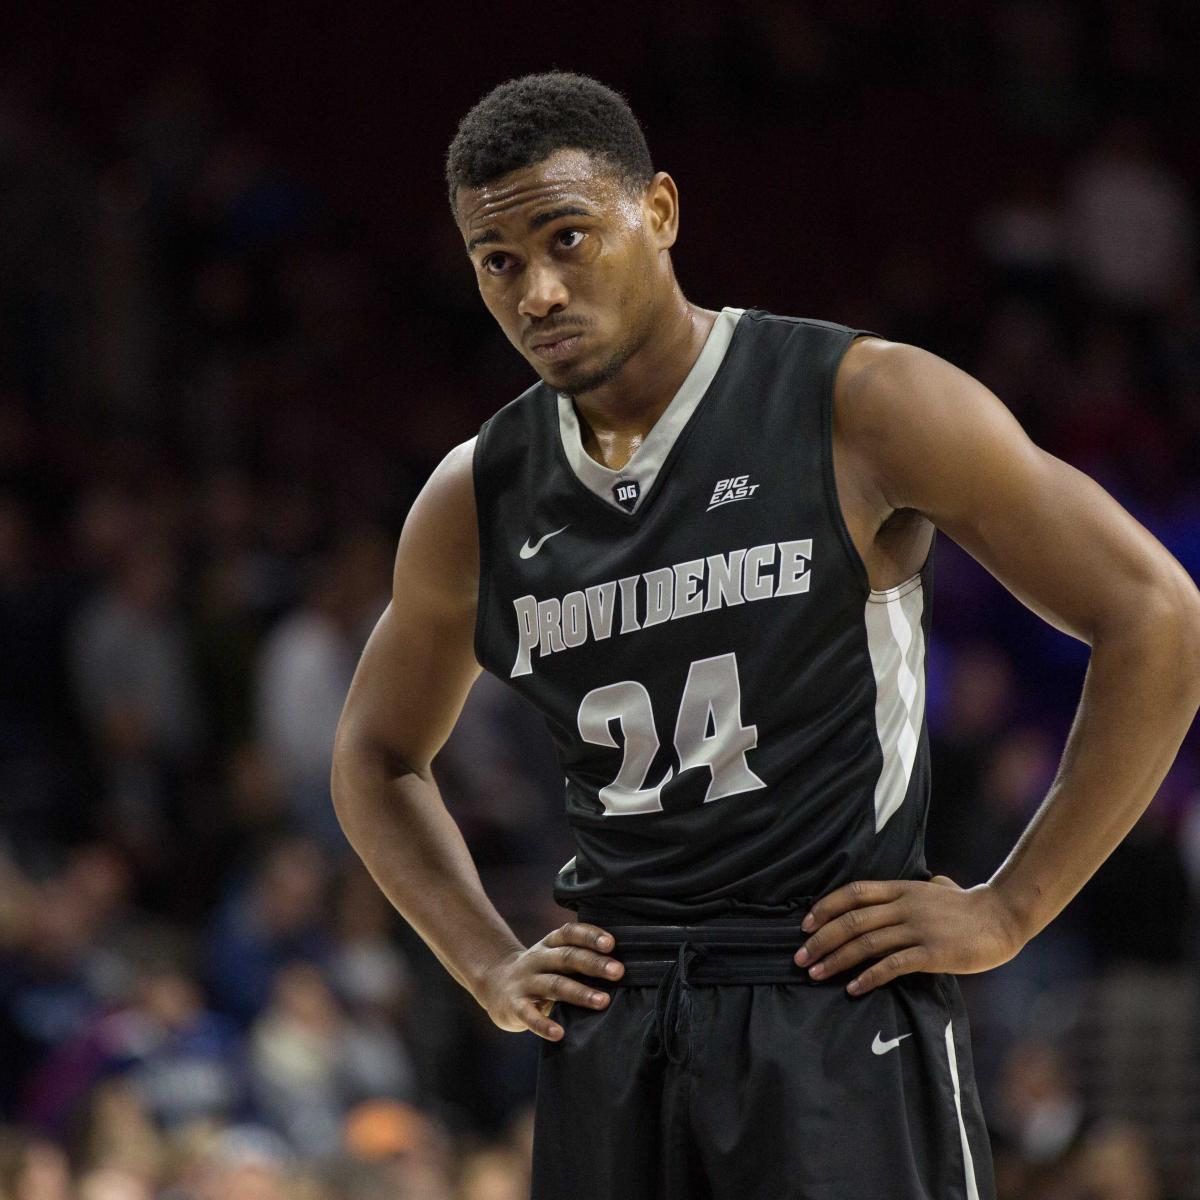 Elite Men's Basketball Prospect Edosomwan Picks Harvard, Sports